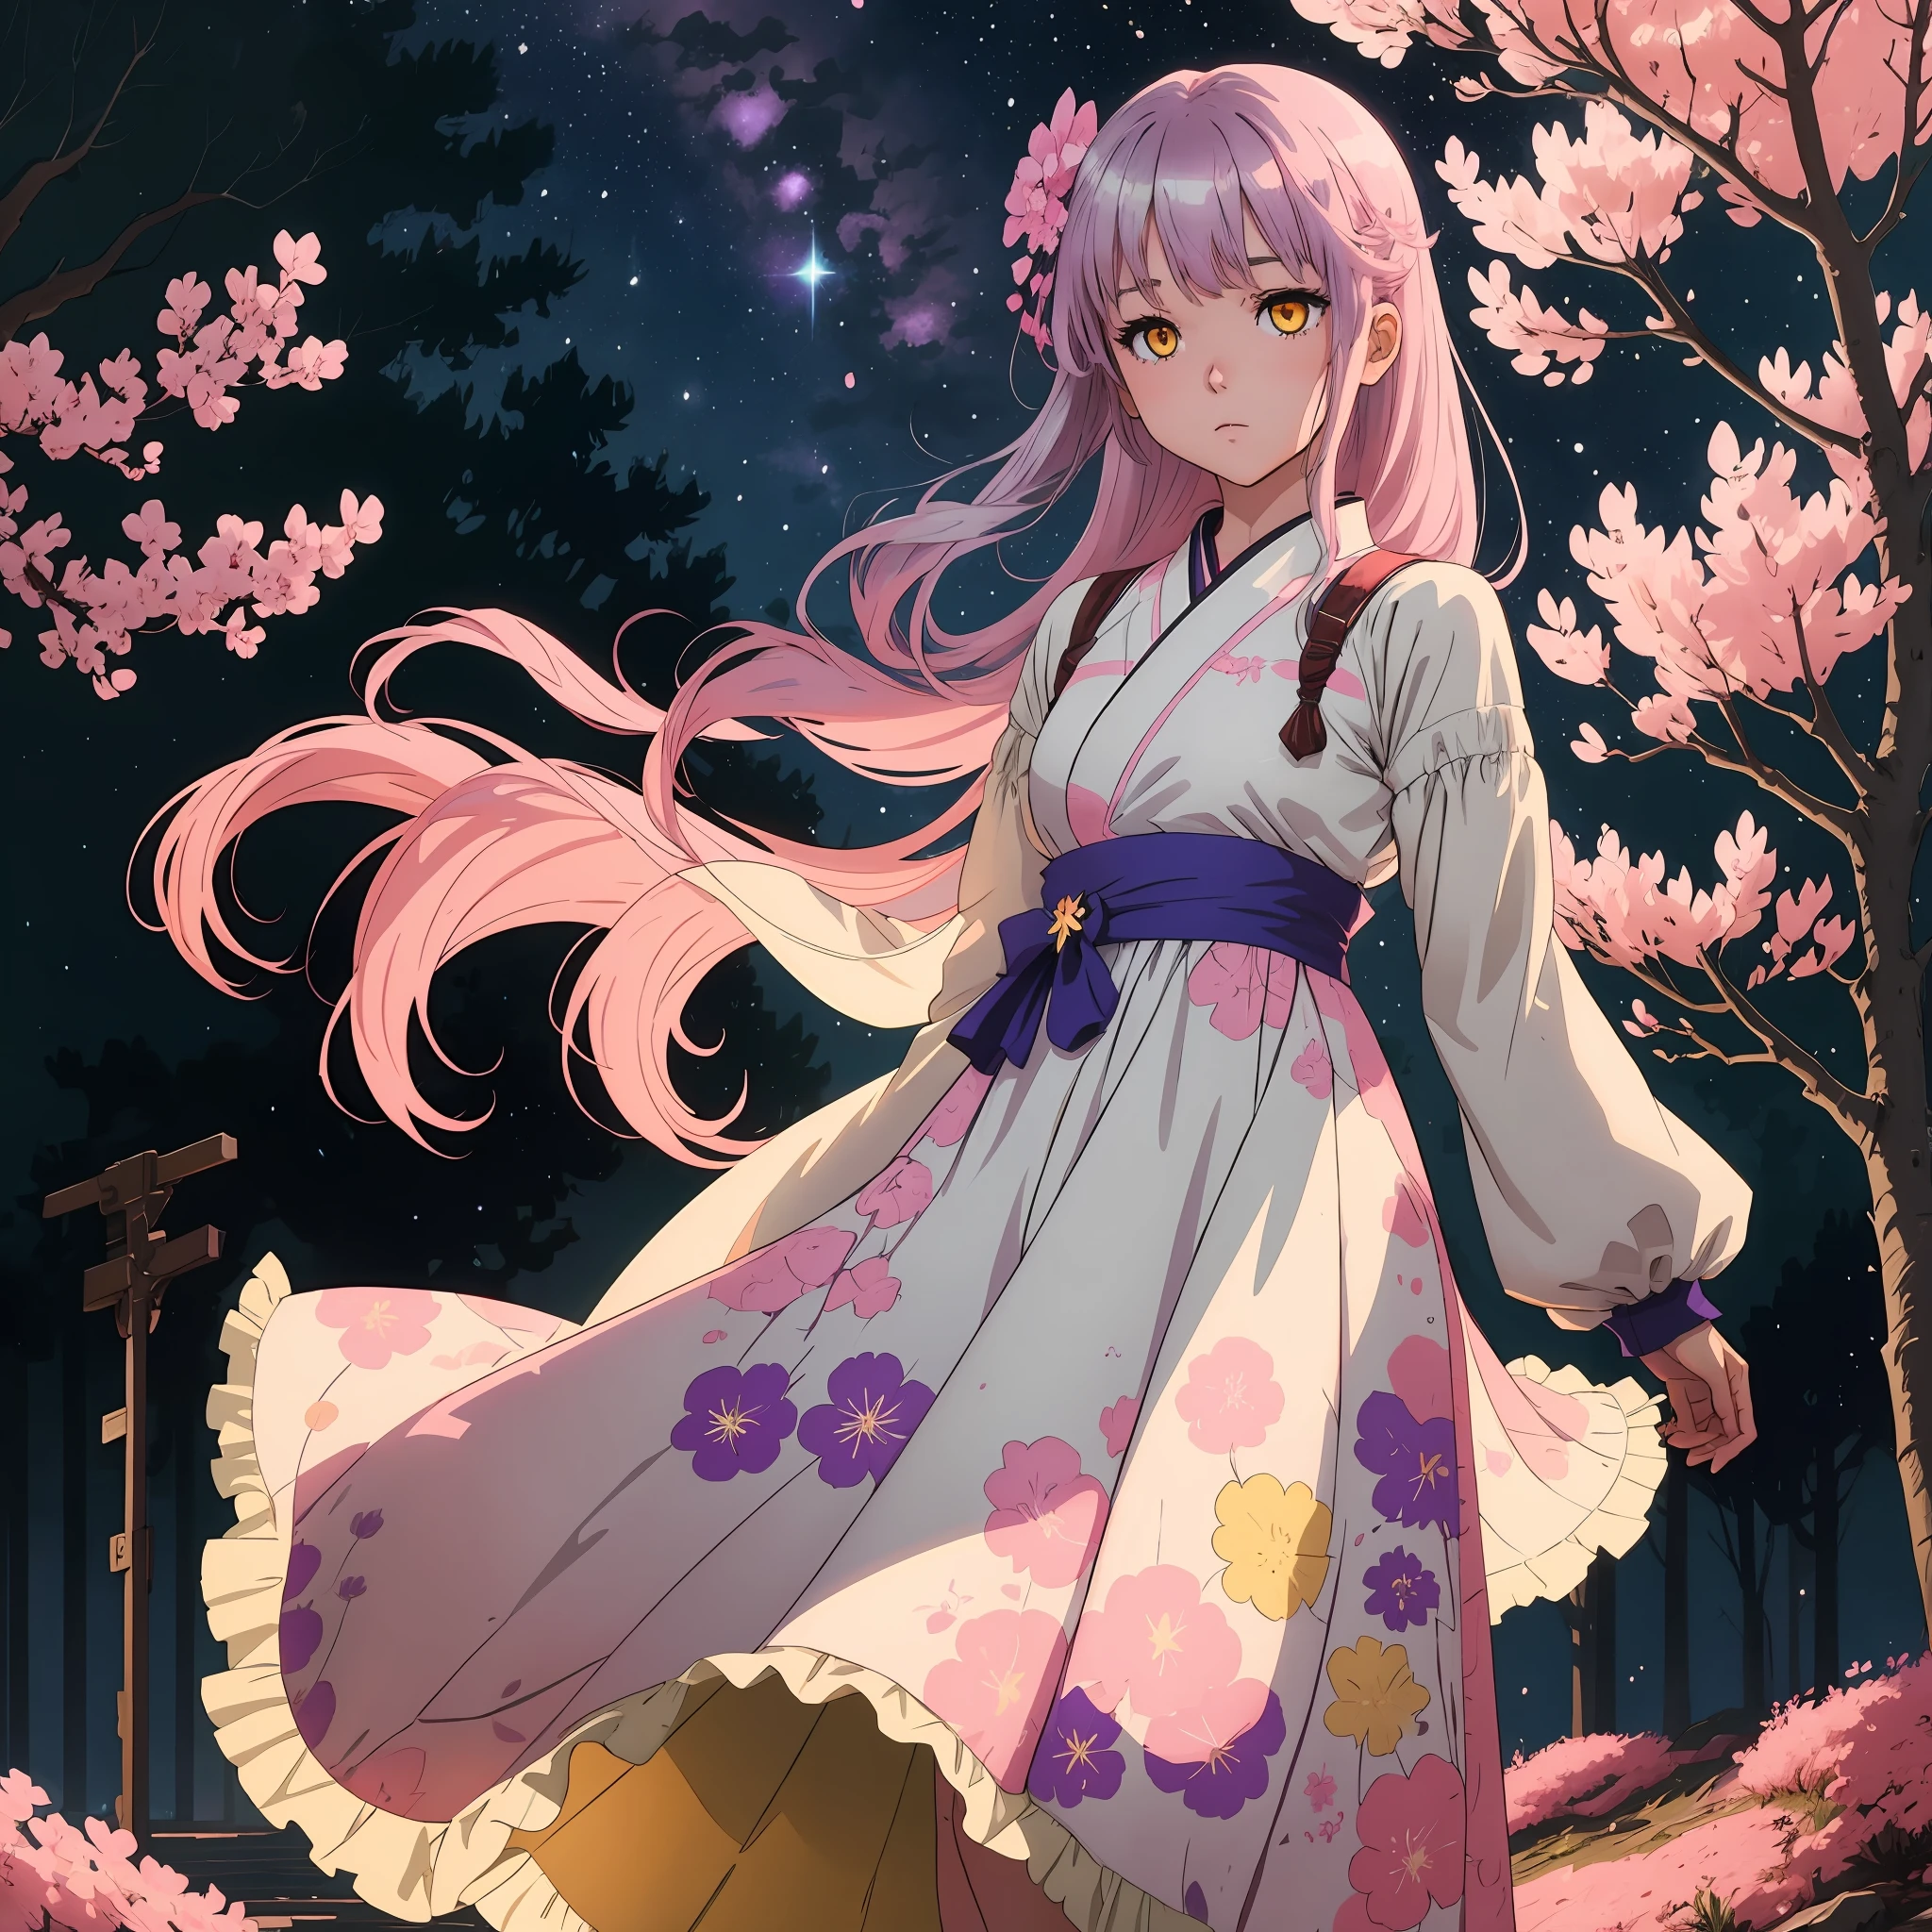 Una chica anime 2d de cabello plateado con ojos amarillos brillantes y Sakura rosa en su cabello con un vestido de tul esponjoso lavanda de pie bajo el cielo nocturno estrellado sola rodeada de árboles de Sakura